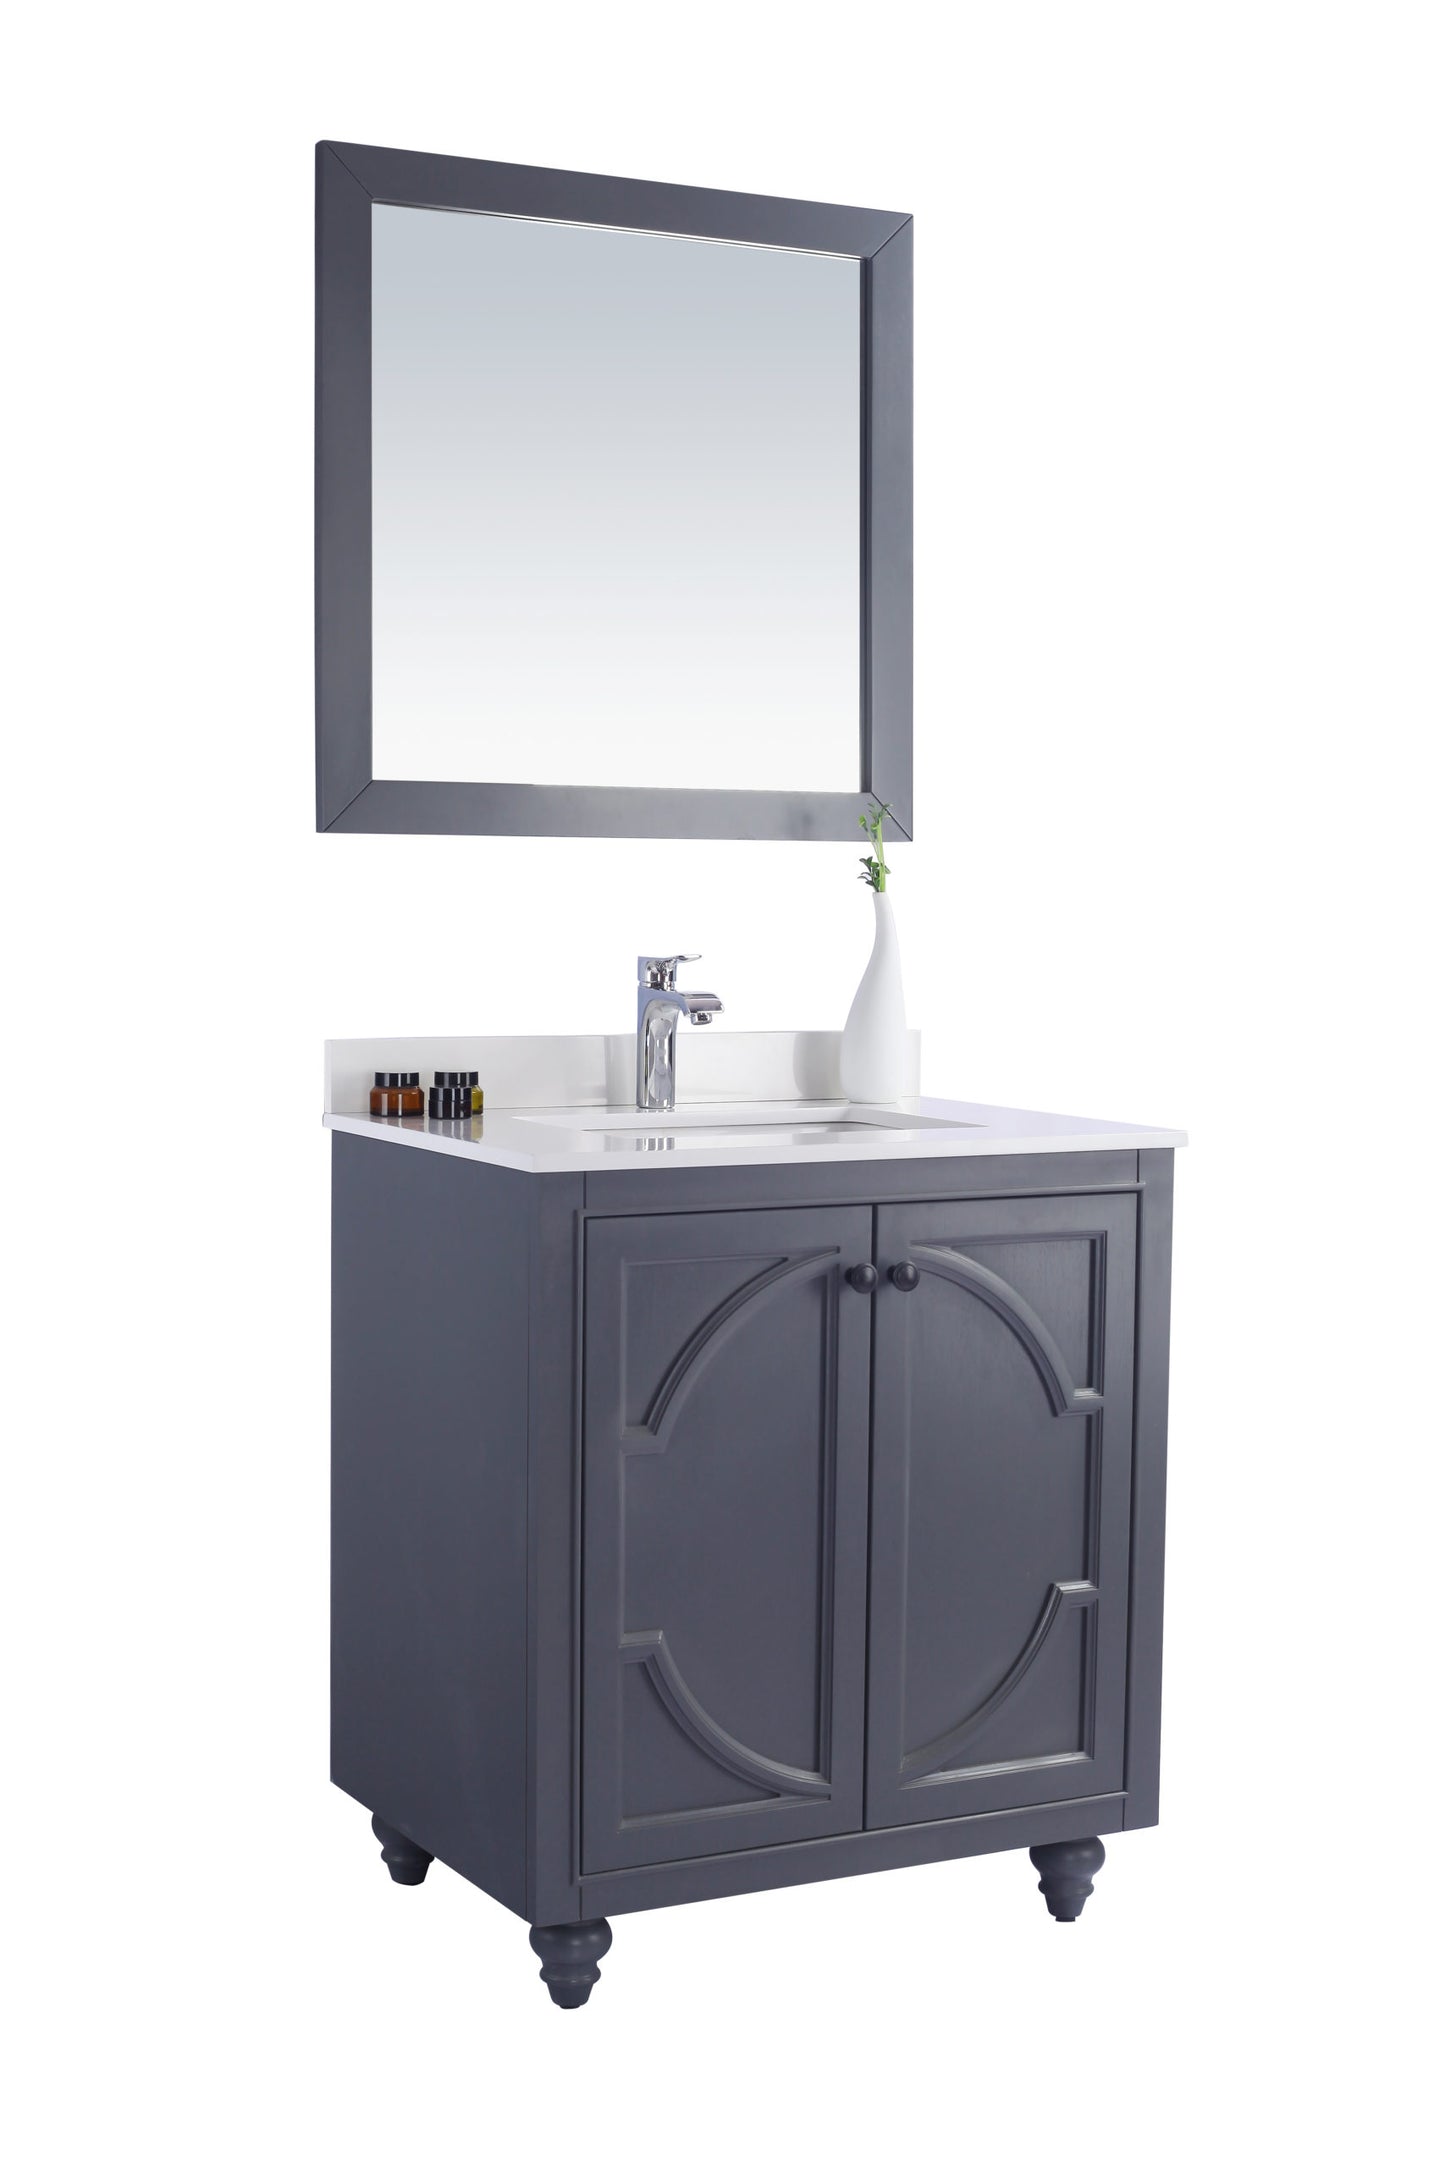 Odyssey 30" Maple Grey Bathroom Vanity with White Quartz Countertop